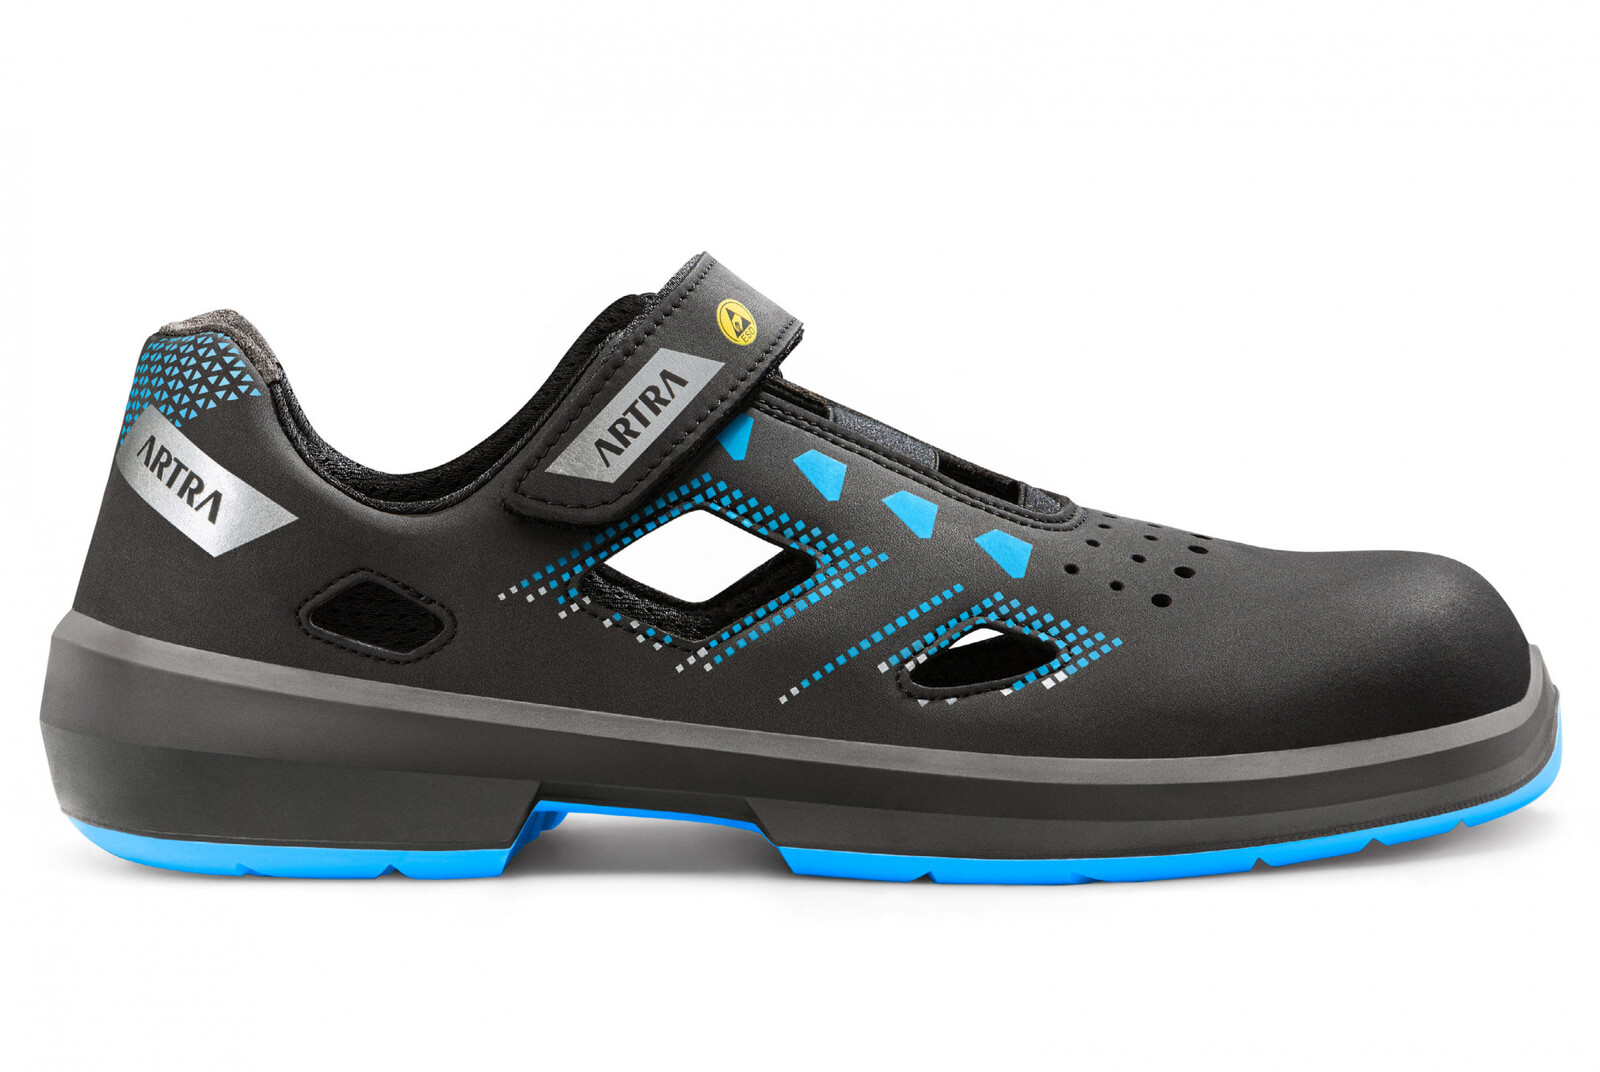 Bezpečnostné sandále Artra Arzo 805 619090 S1P SRC ESD MF - veľkosť: 46, farba: čierna/modrá